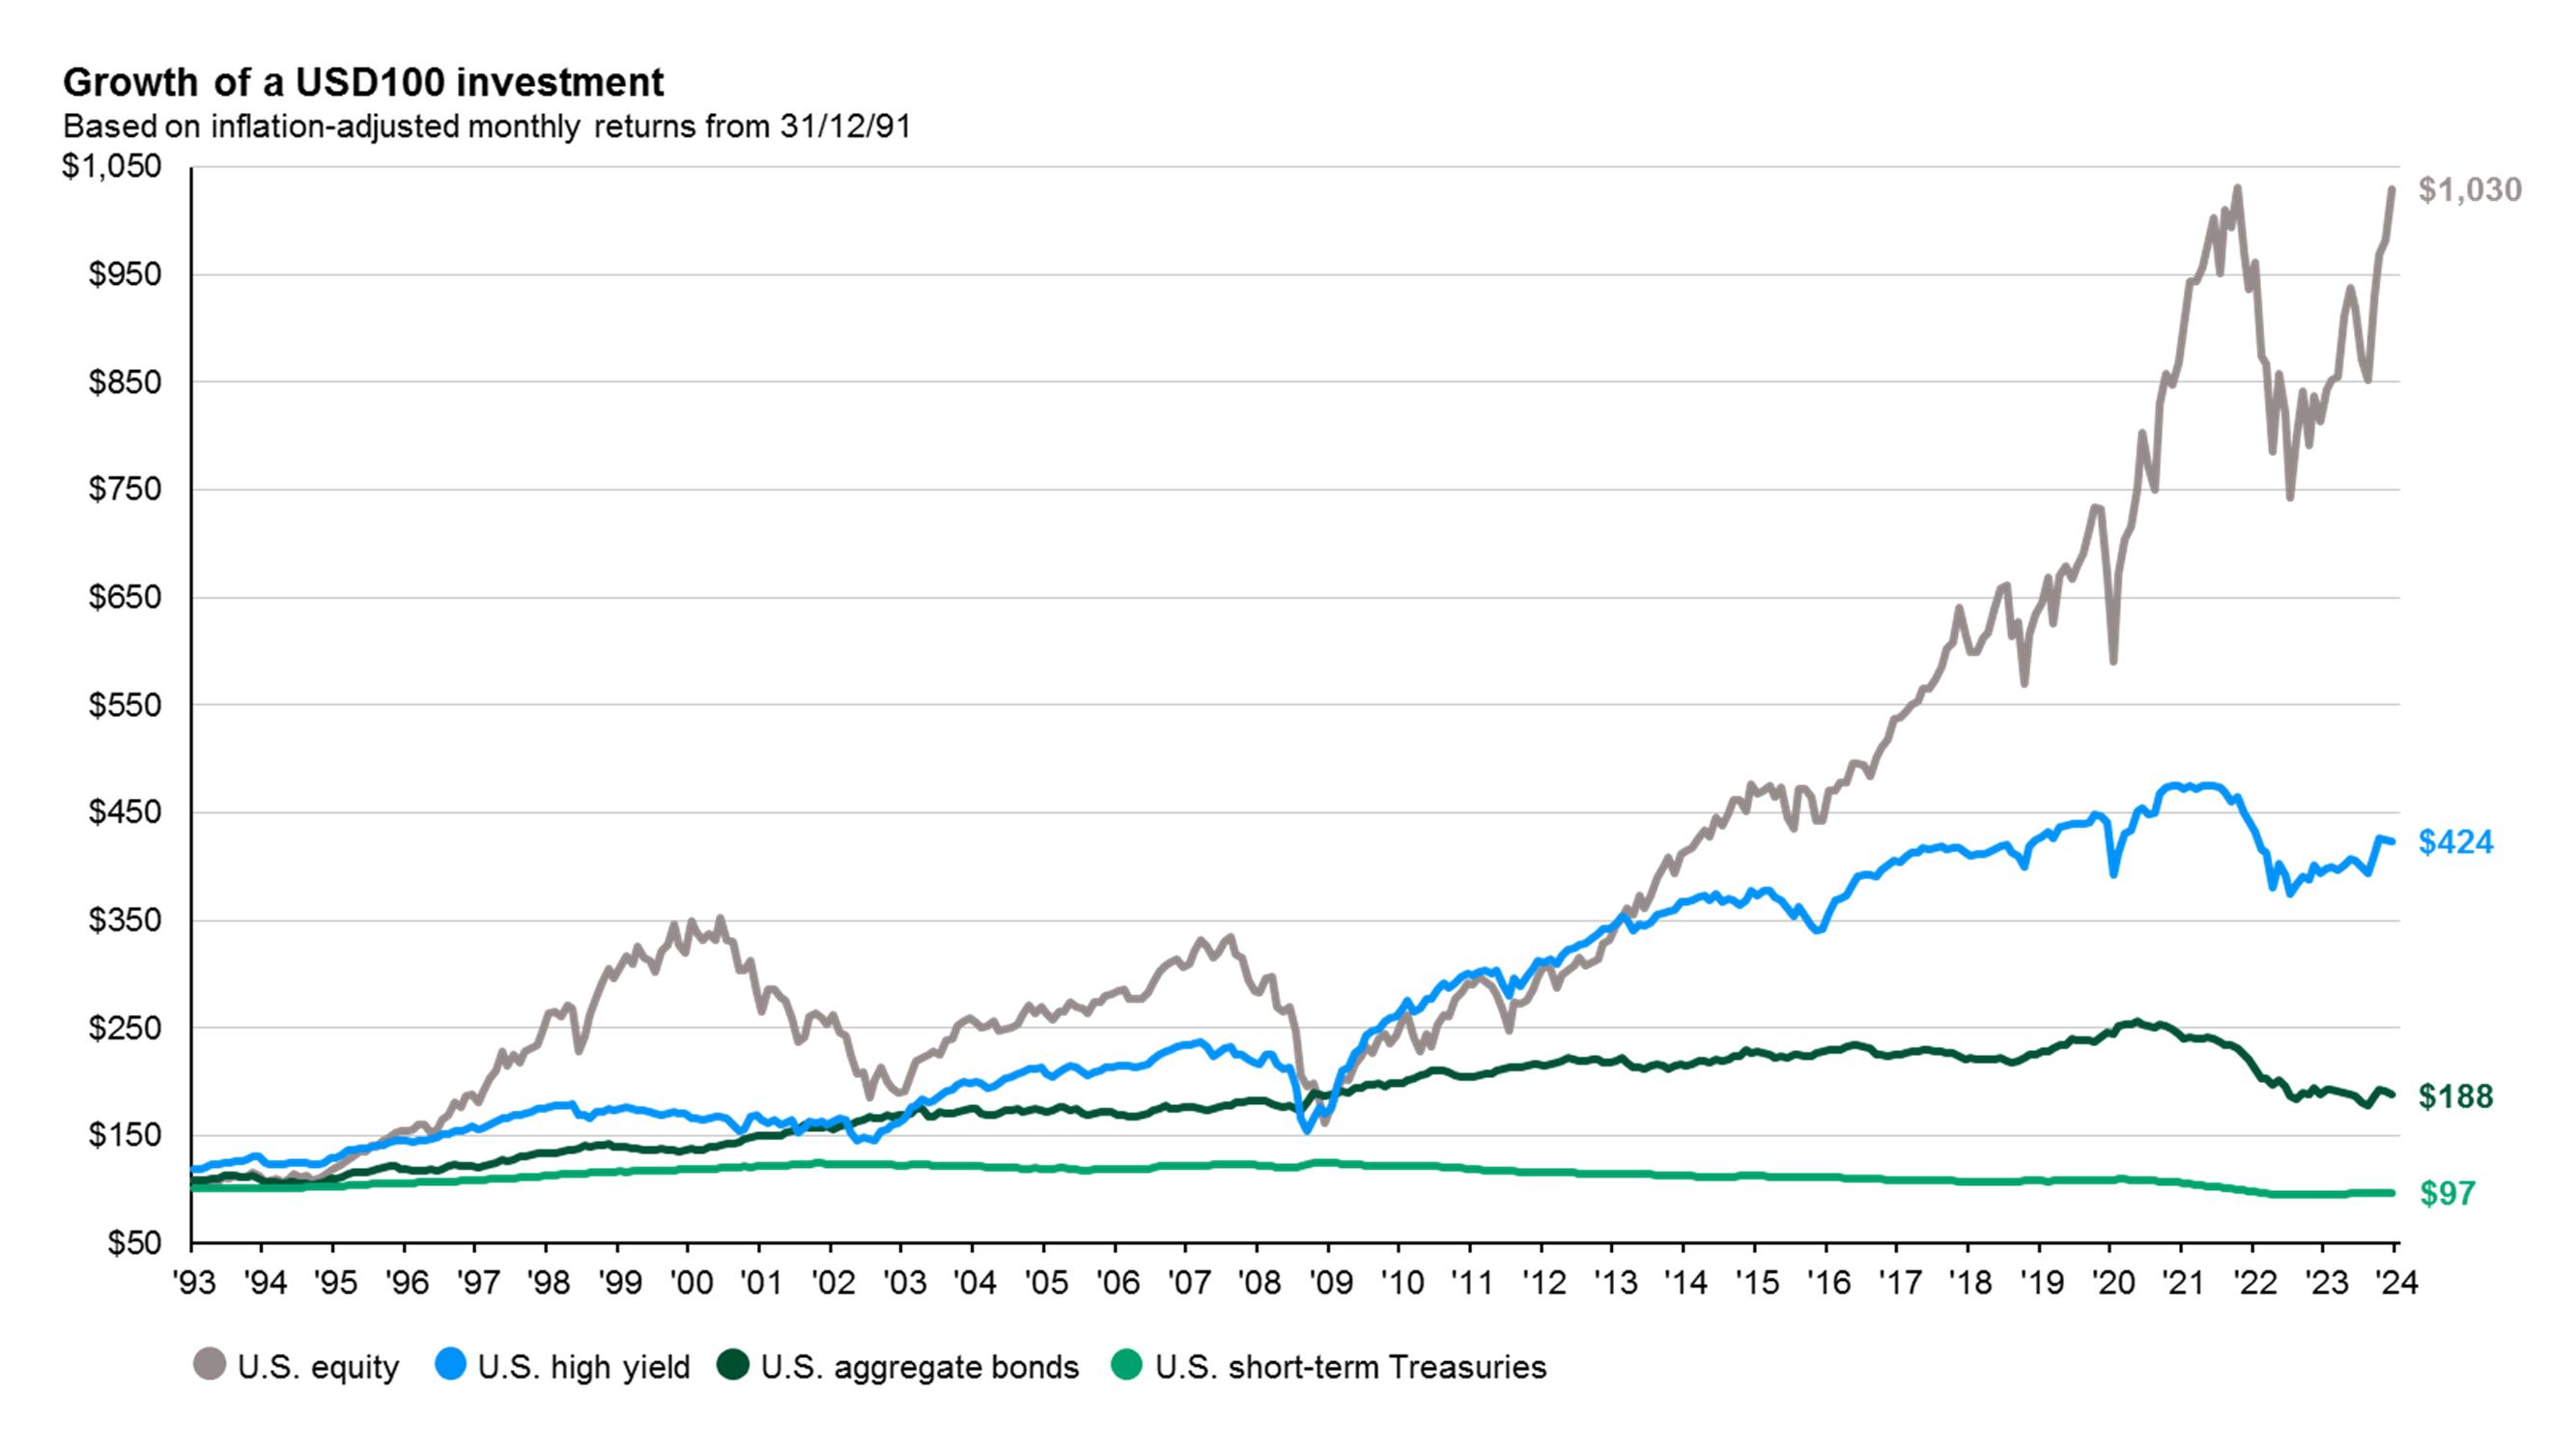 Correlation between stocks and bonds